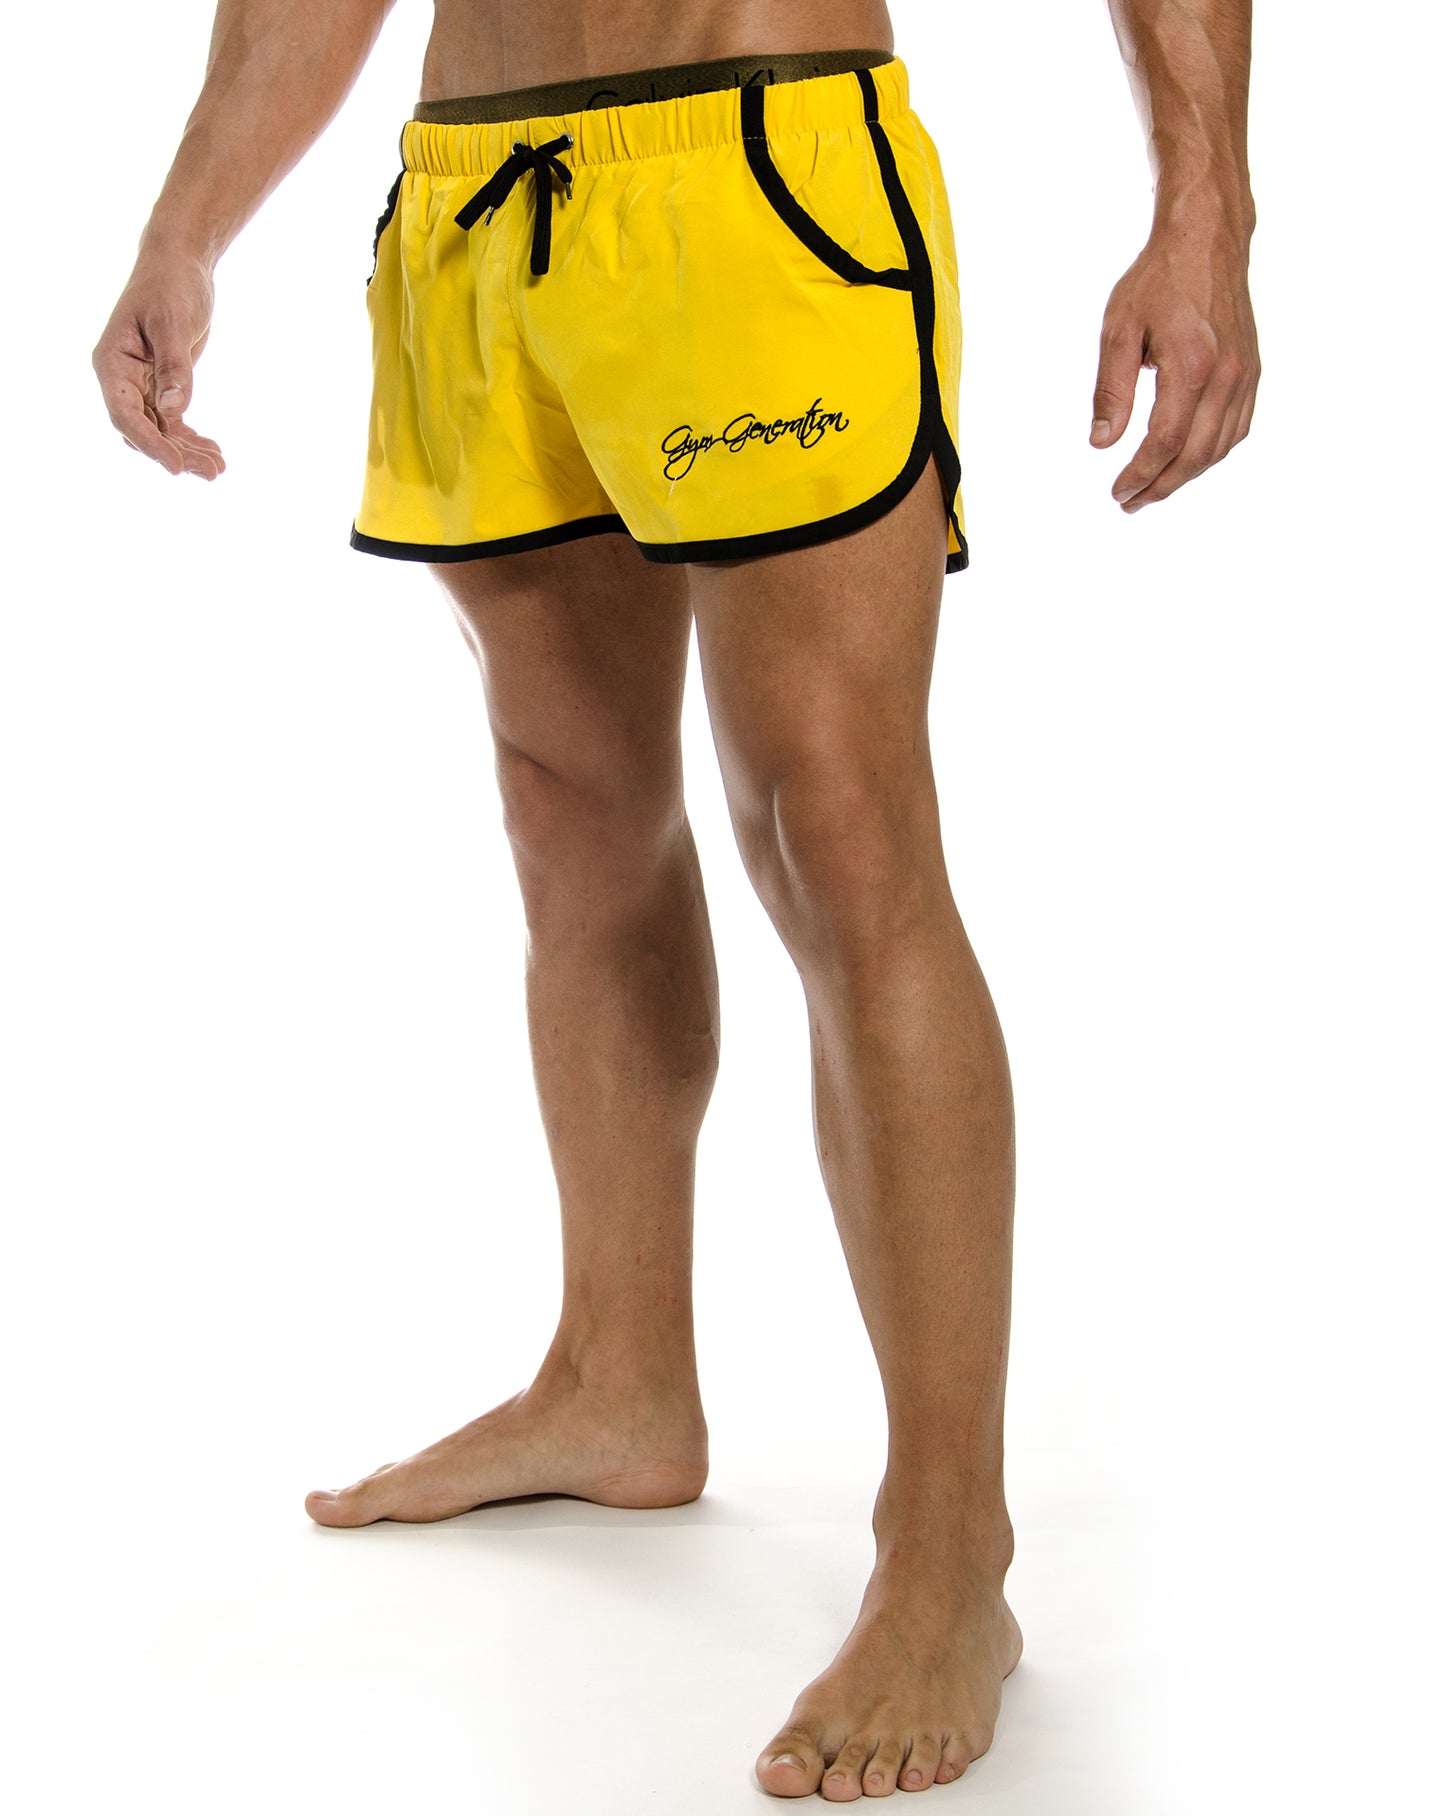 Hochwertige gelbe Zyzz Shorts von Gym Generation, designed für Komfort und Funktionalität bei sportlichen Aktivitäten